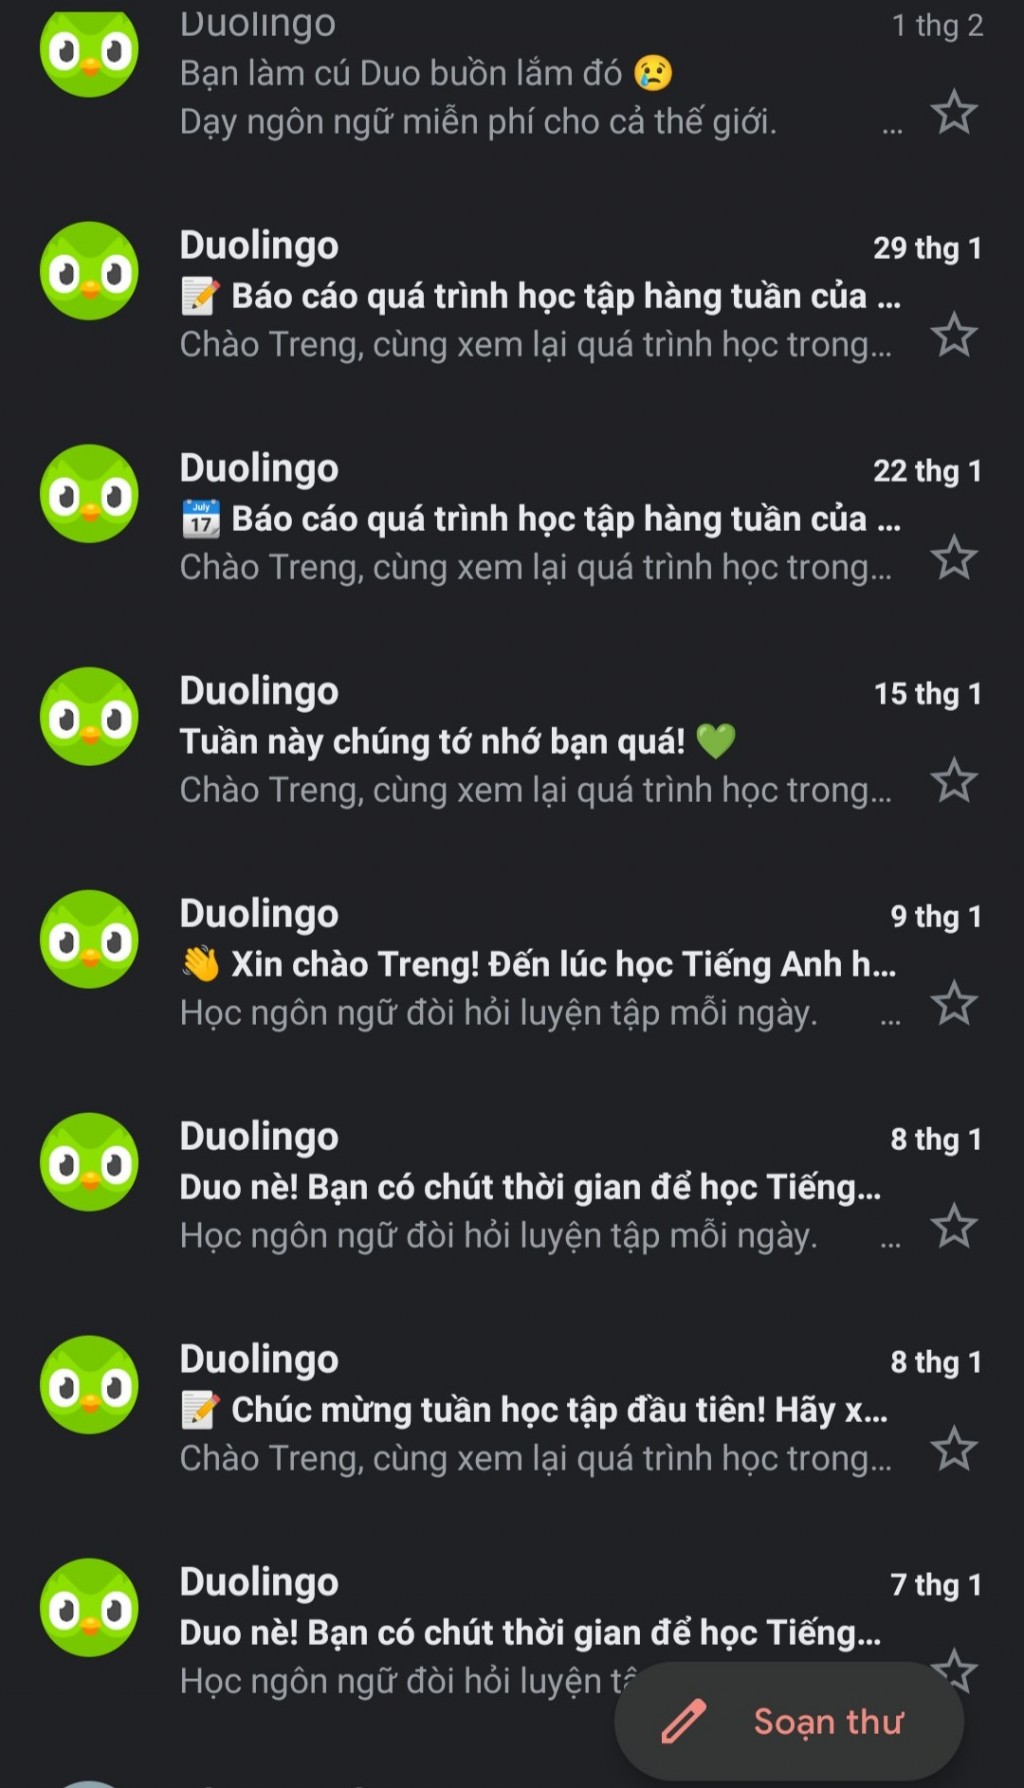 Nếu không học, ứng dụng Duolingo sẽ liên tục spam khiến người học ám ảnh